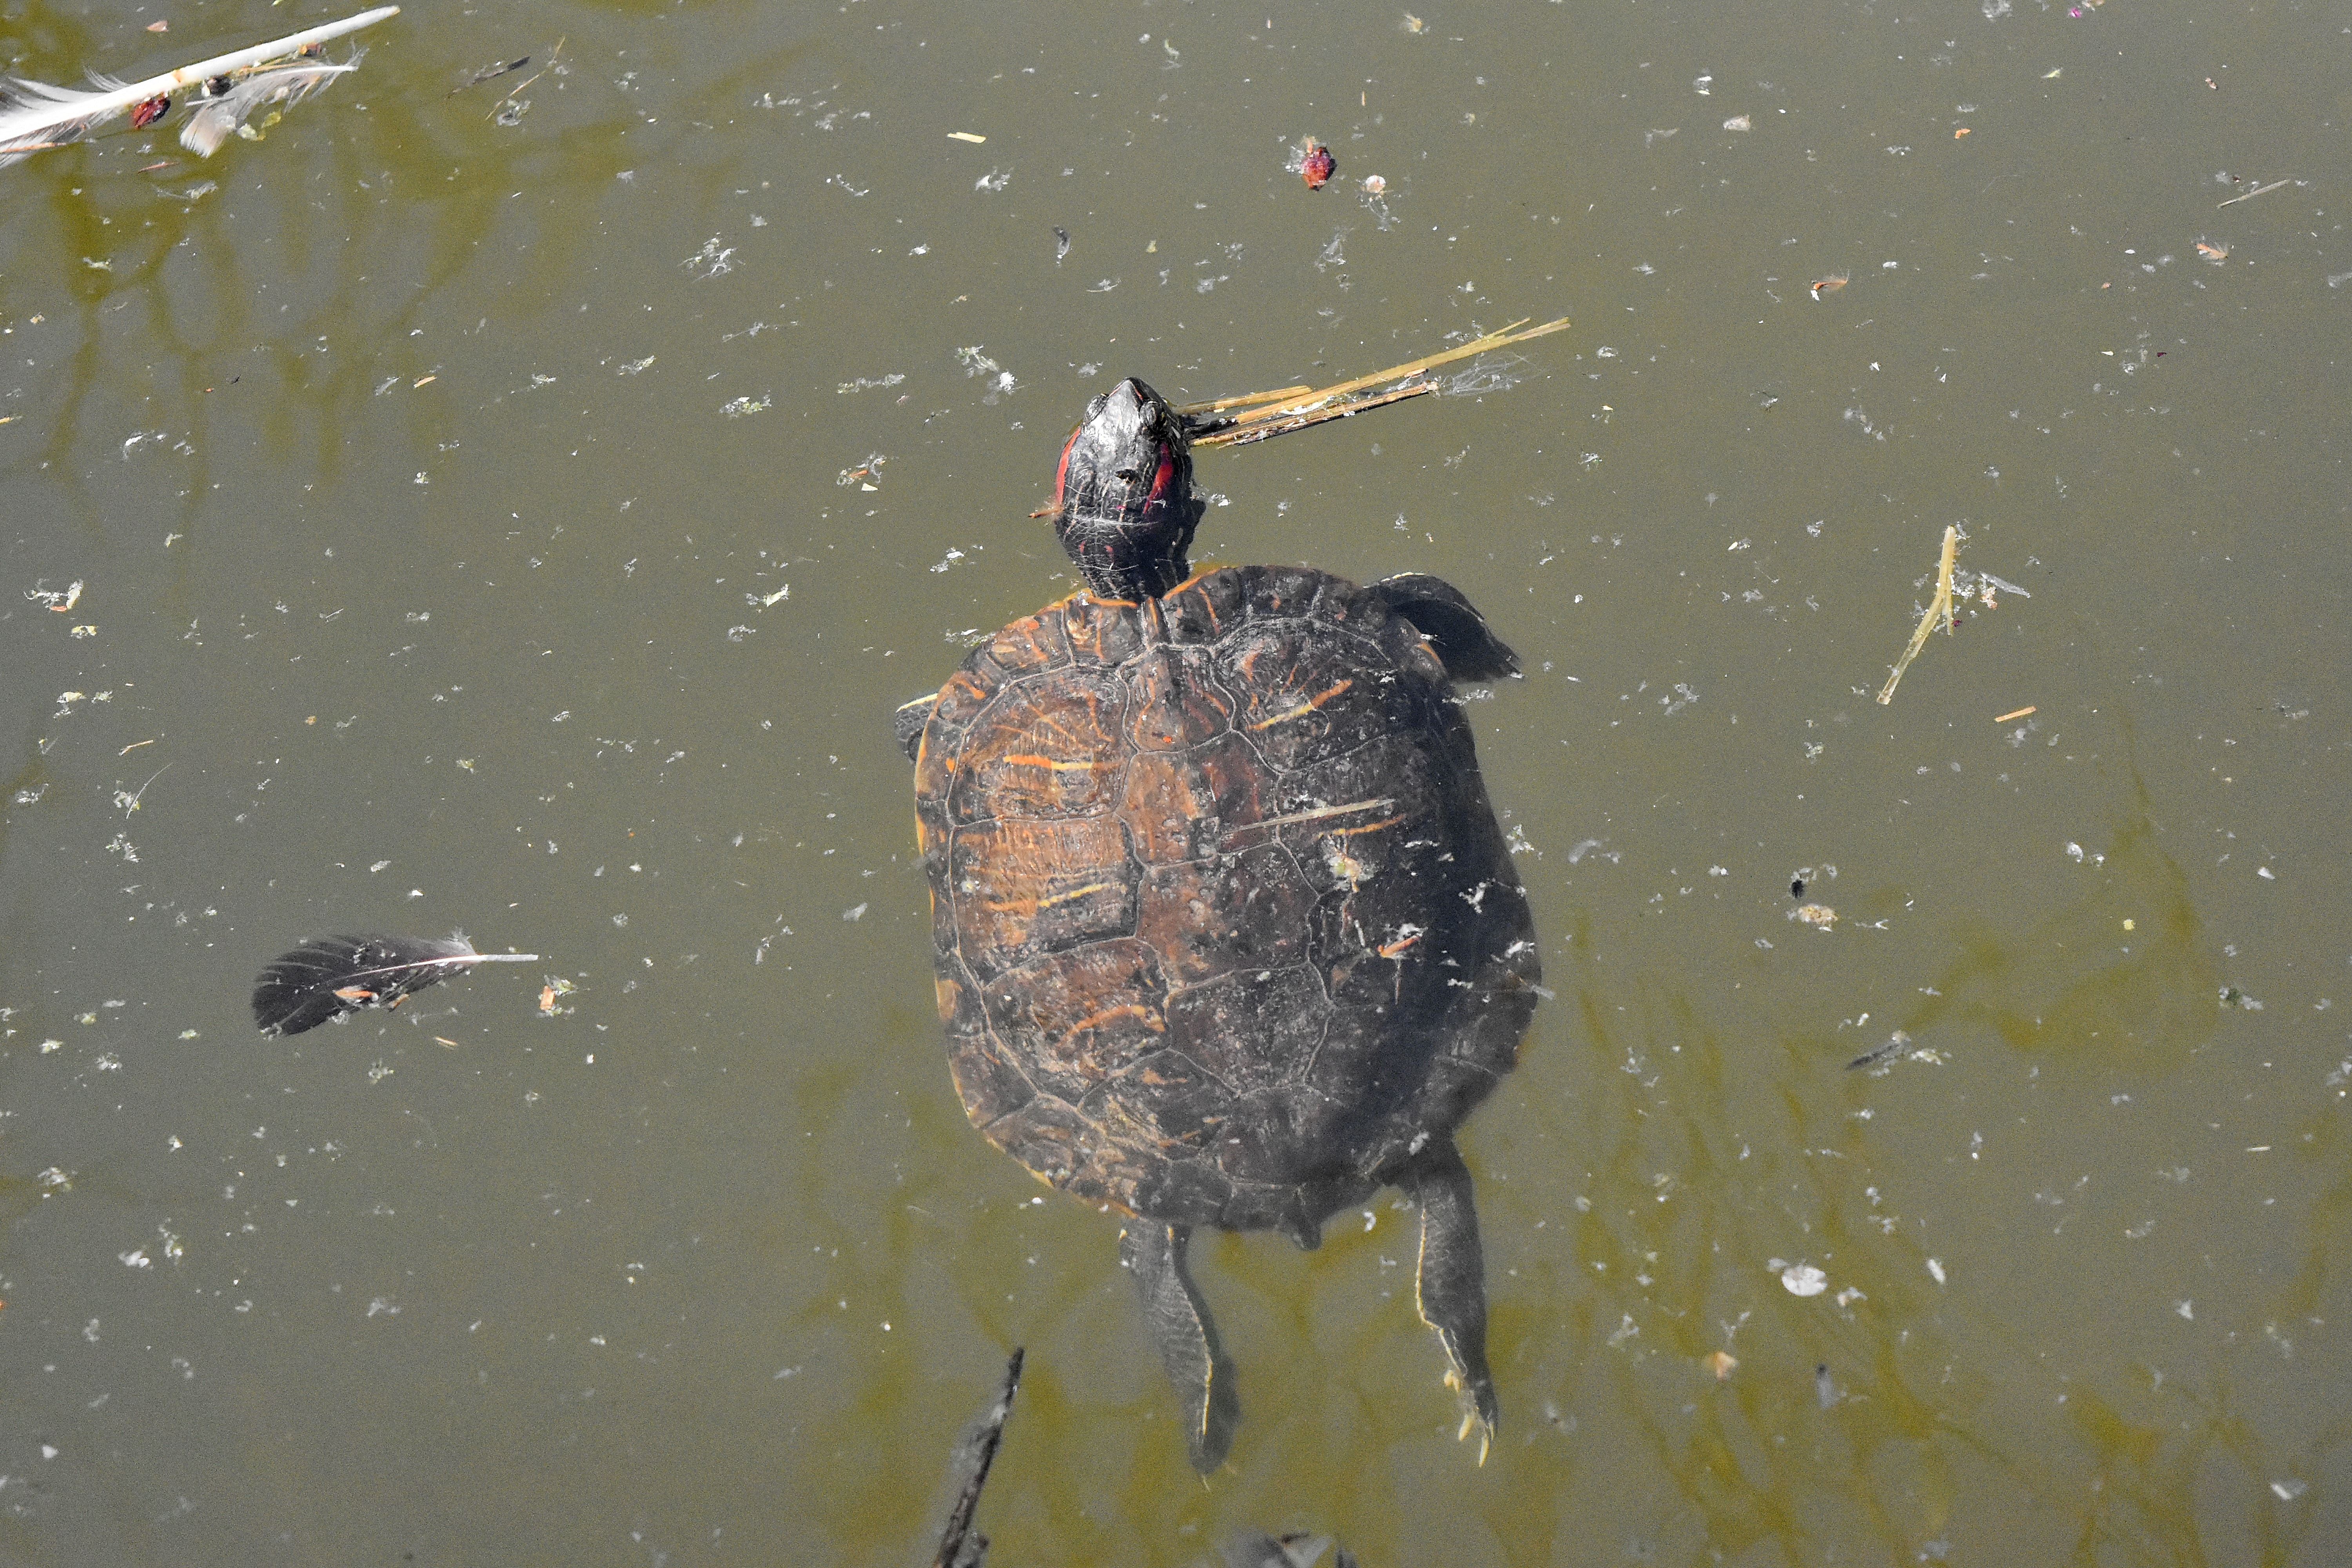 Малаховское озеро черепахи. Черепаха в воде. Астрахань озеро с черепахами. Поймал черепаху вместо рыбы. Ловить черепаху